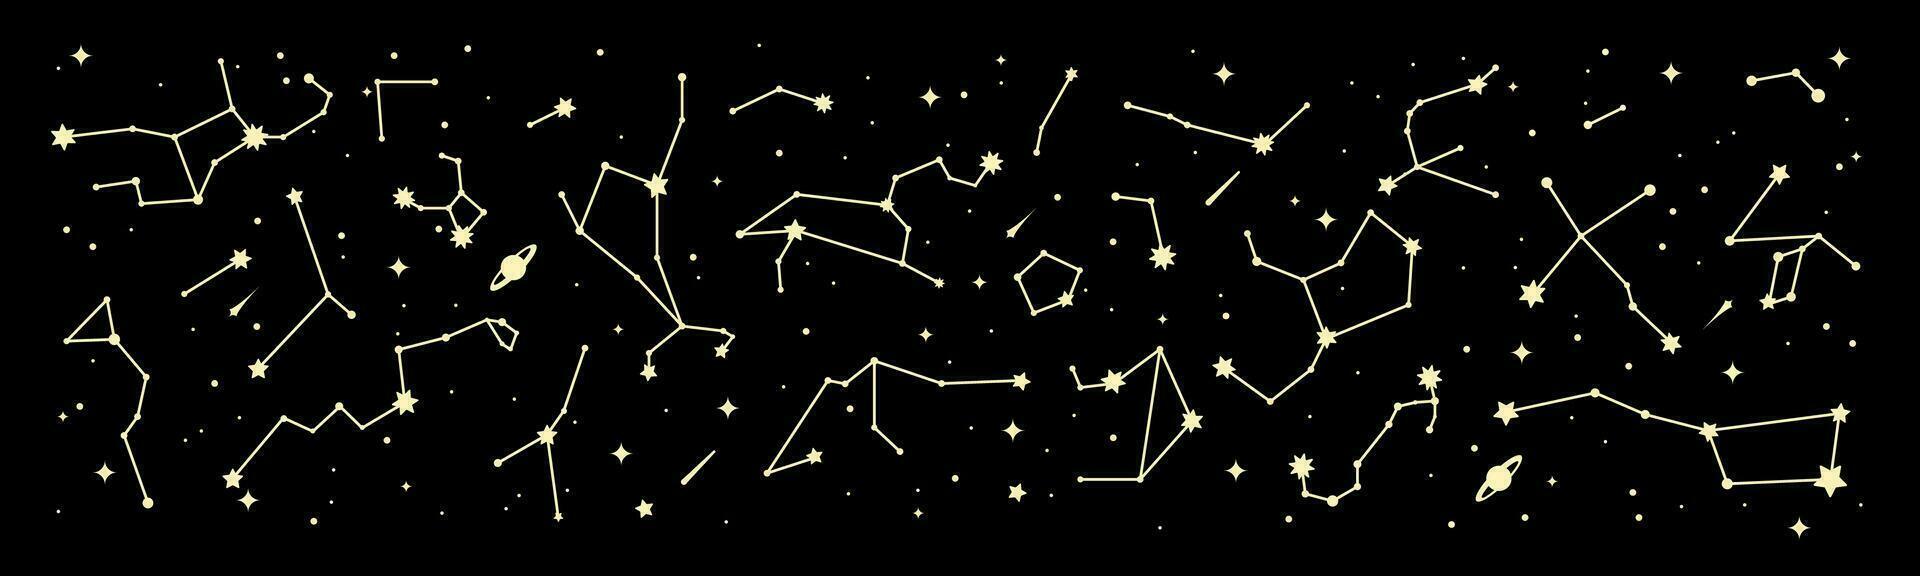 espacio estrella constelación borde, noche cielo mapa vector